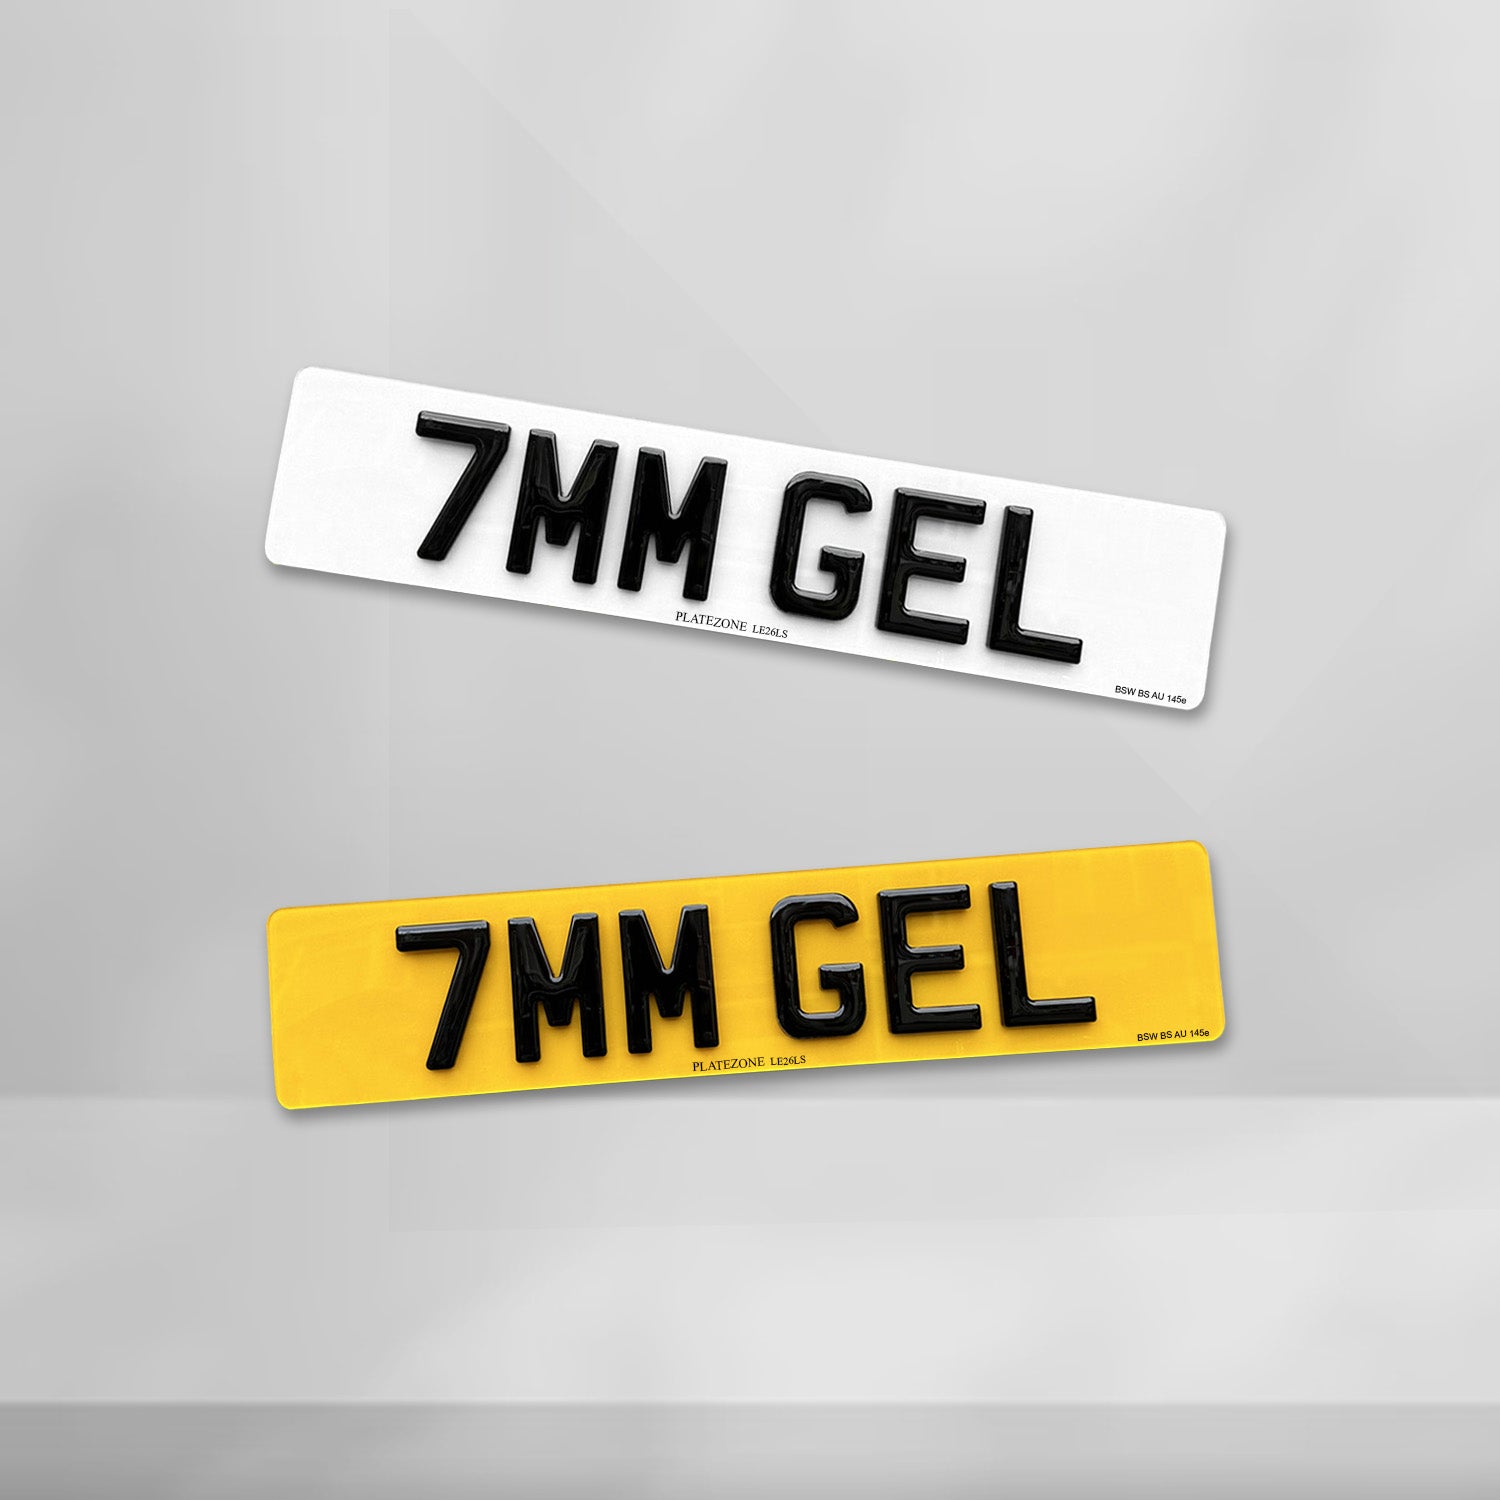 4D Gel 7MM Number Plate